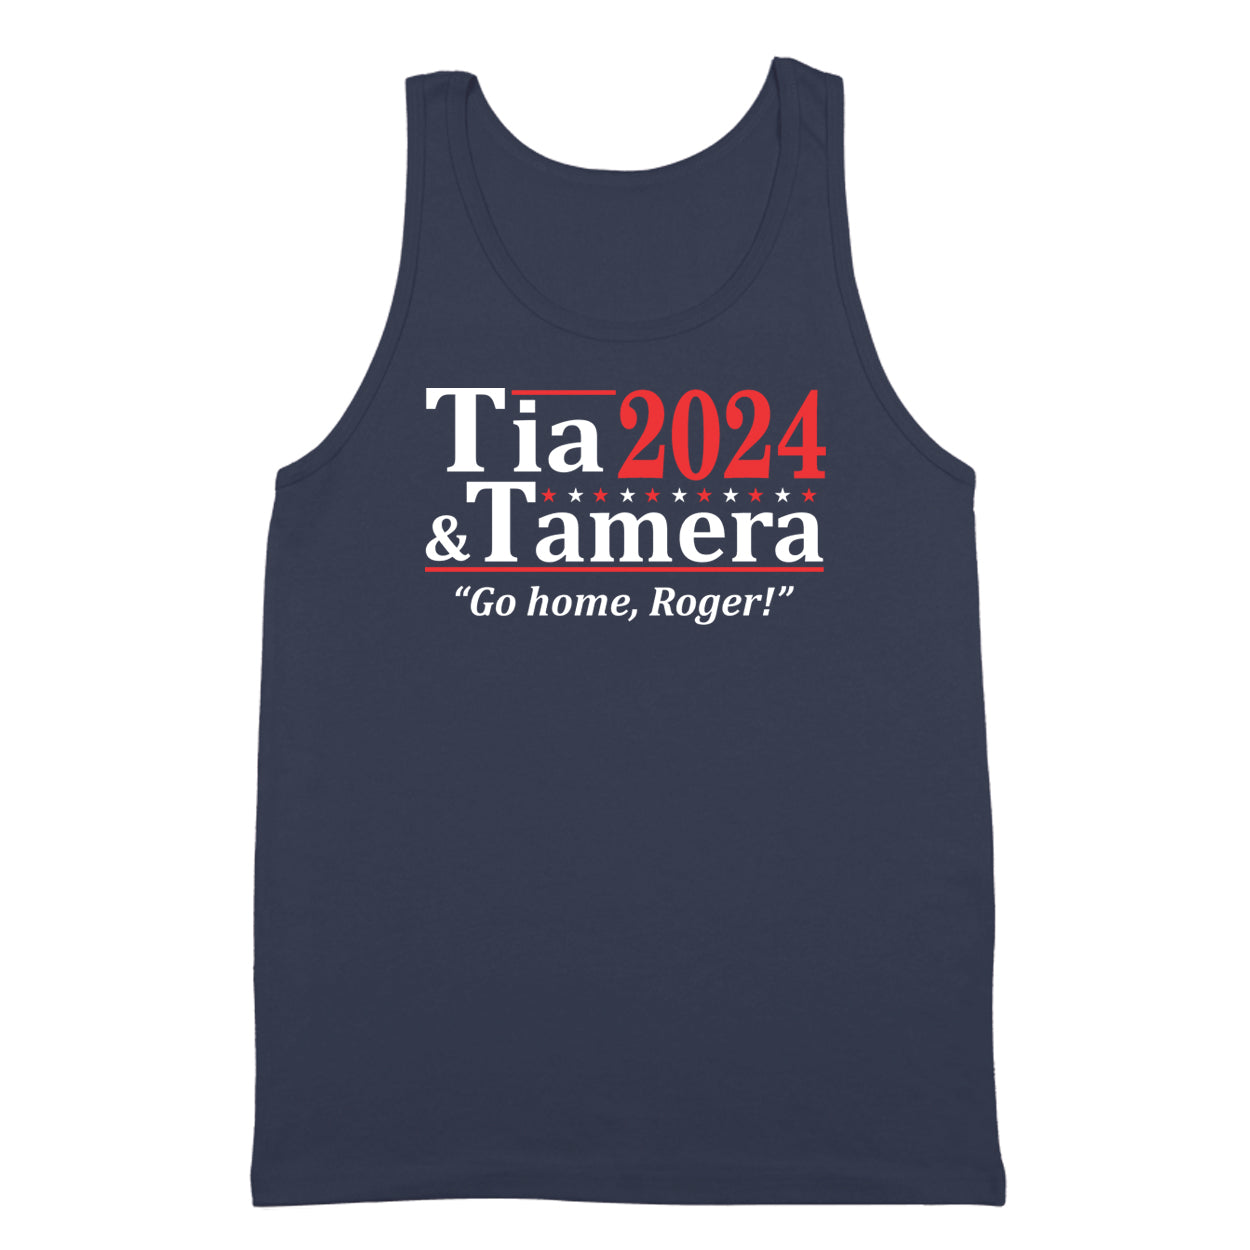 Tia And Tamera 2024 Election Tshirt - Donkey Tees